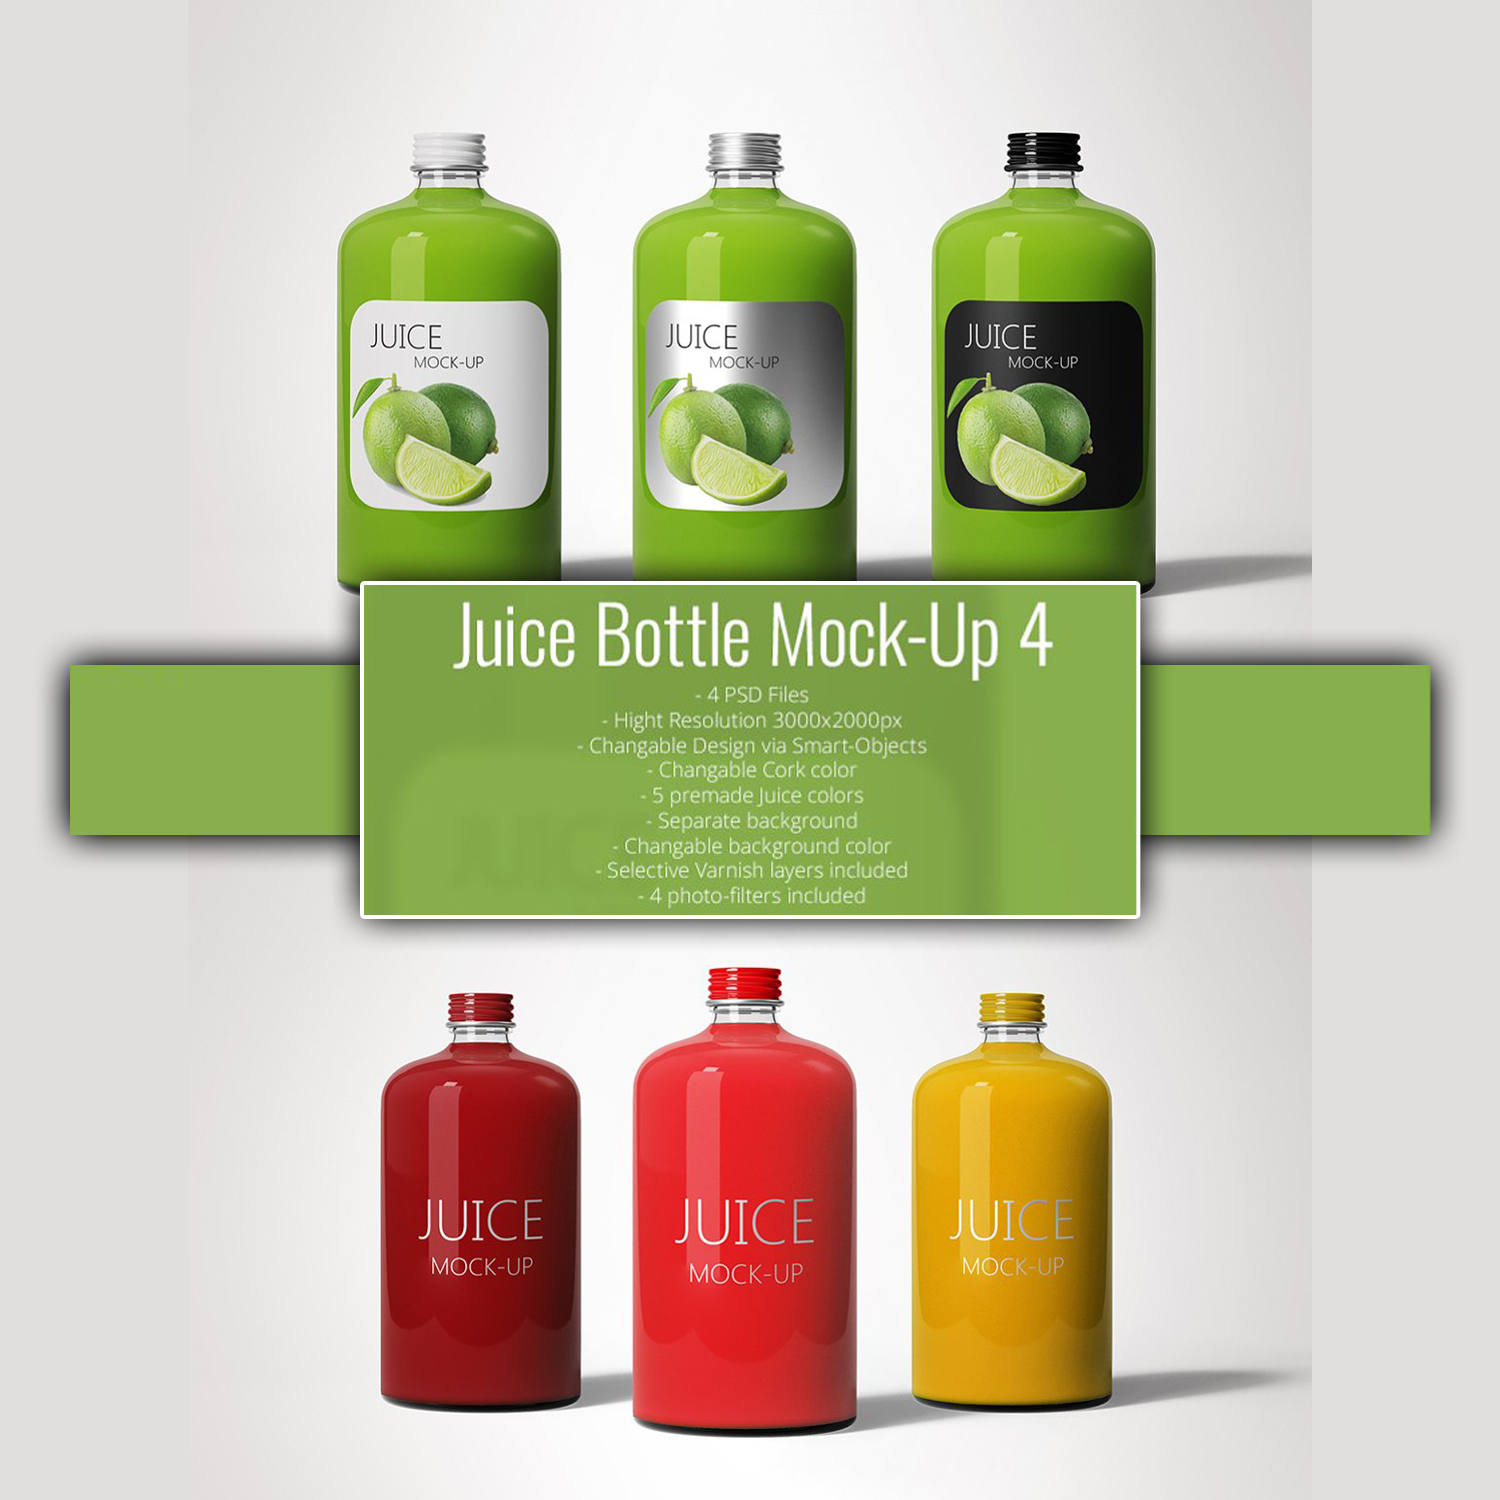 Juice bottle mock up 4 preview.